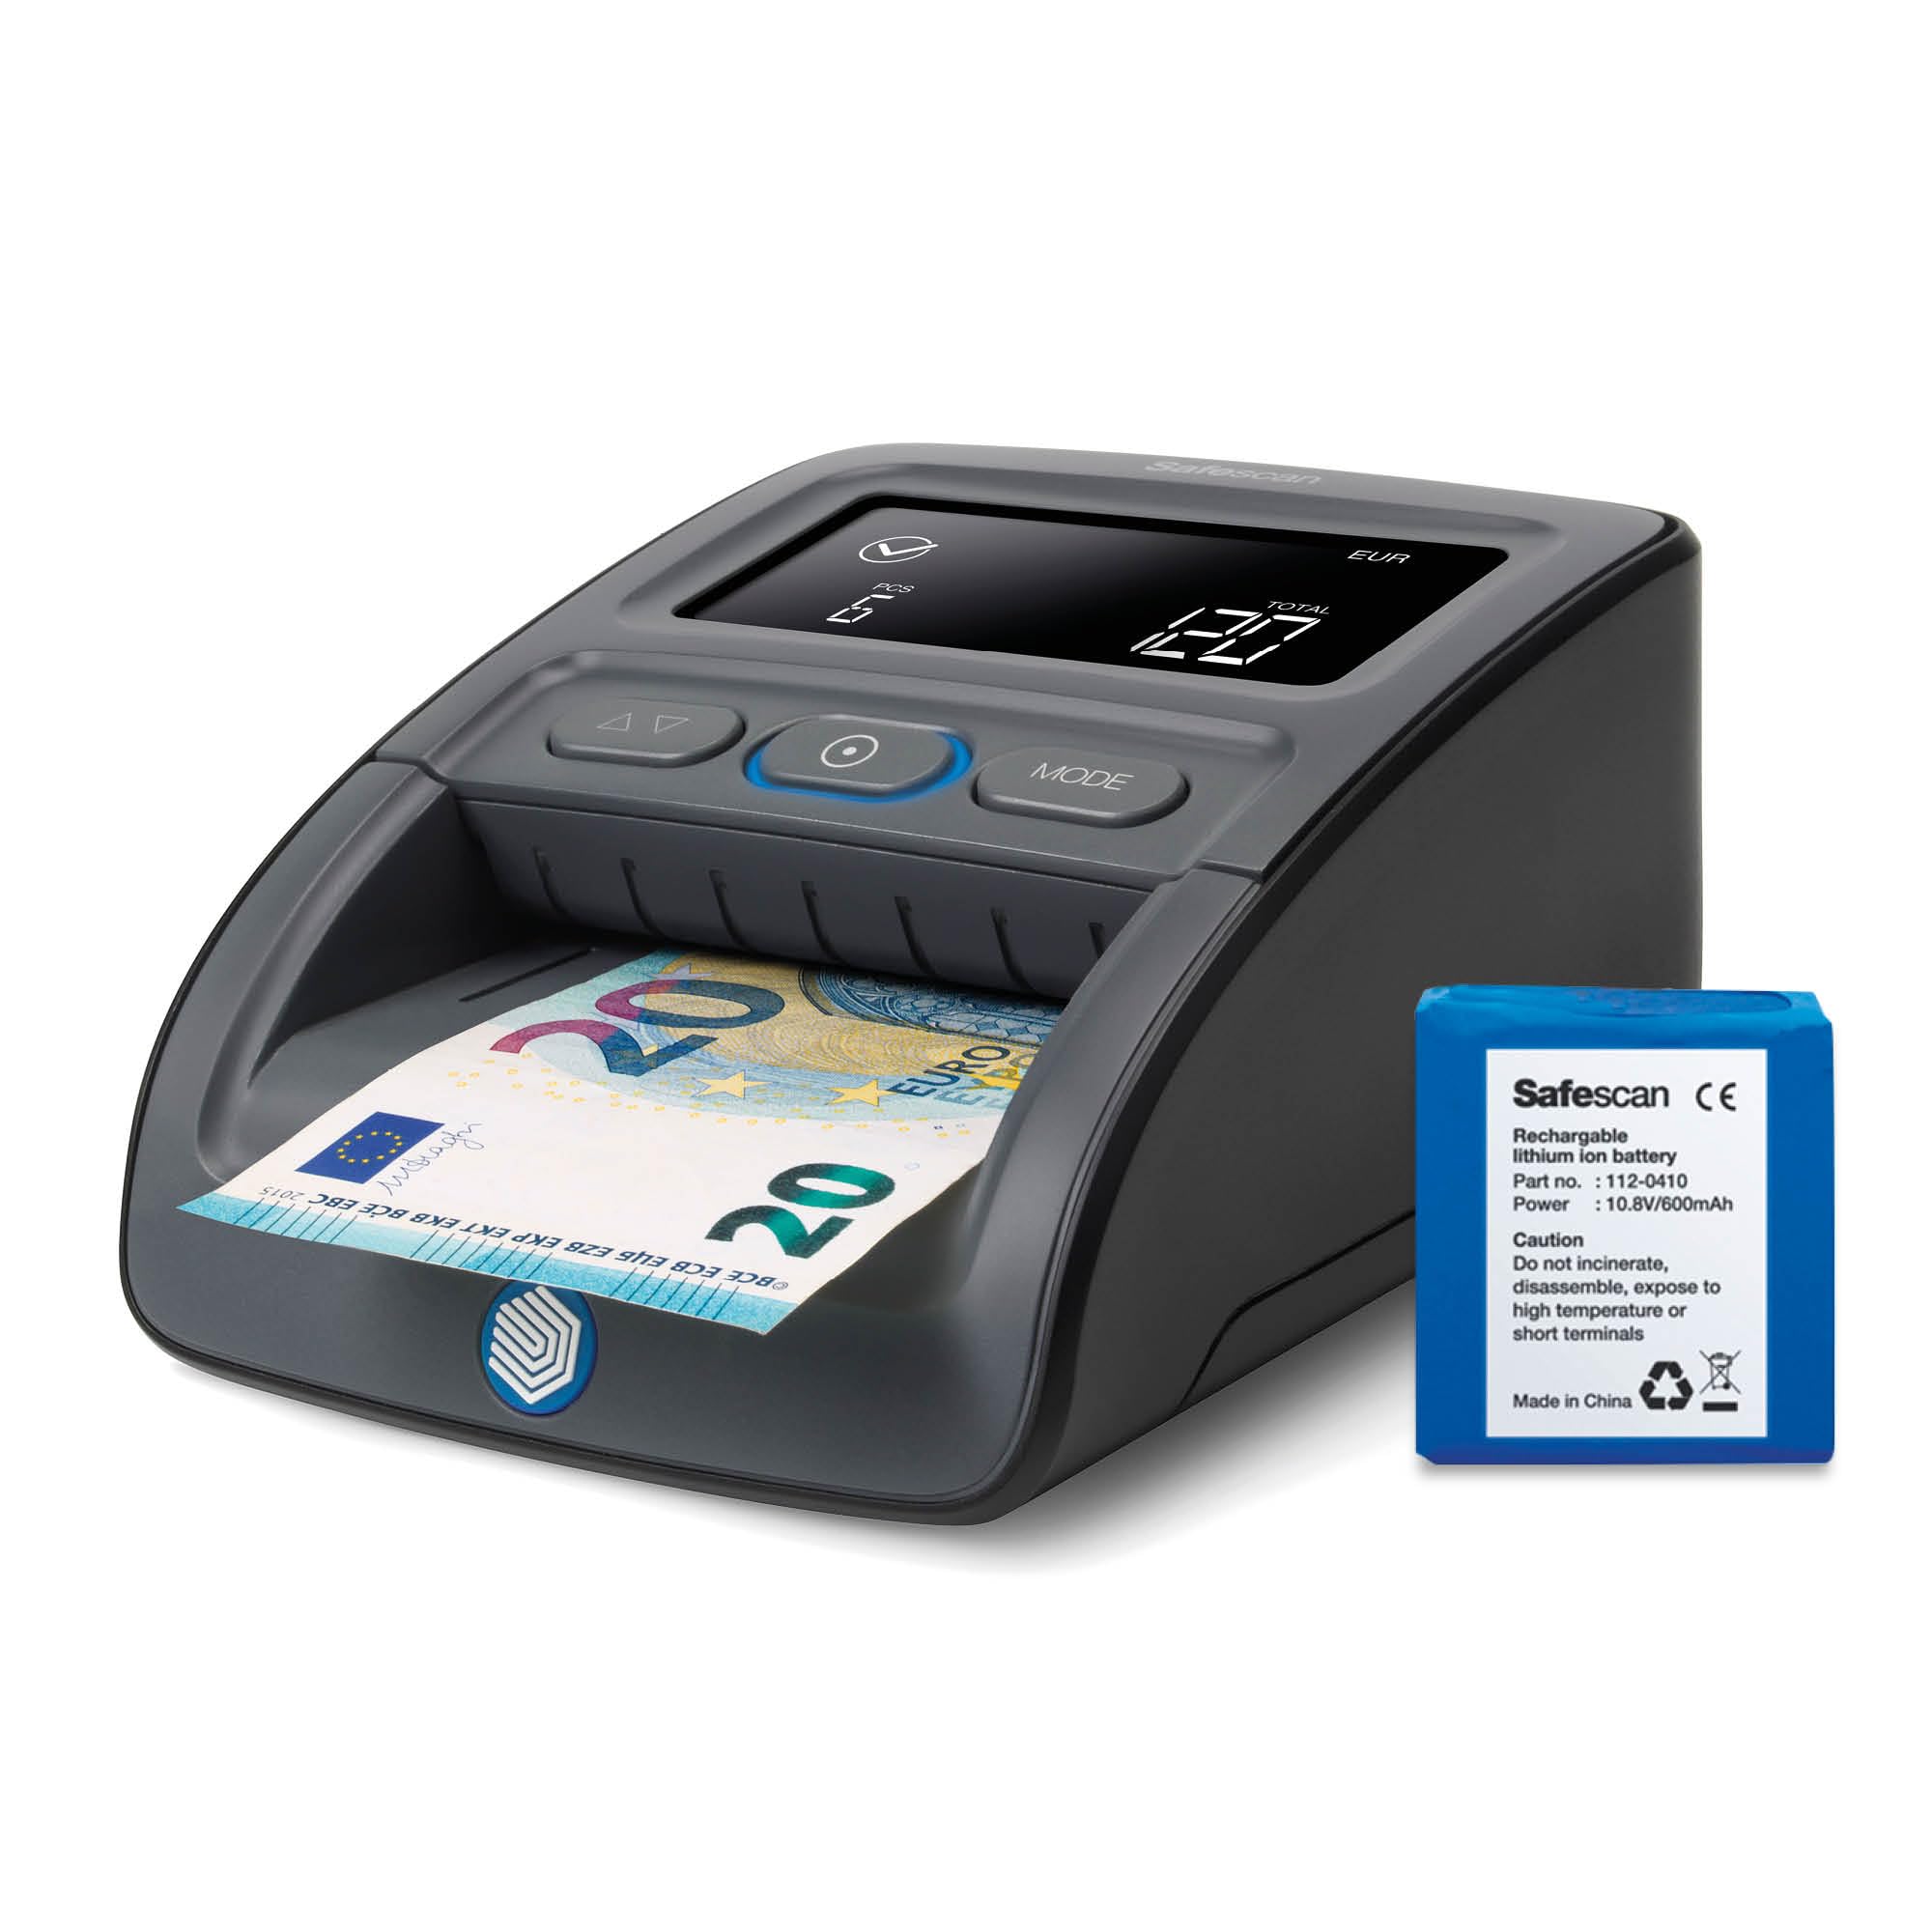 Safescan 155-SX Automatischer und tragbarer Falschgelddetektor zur schnellen Überprüfung von Banknoten - Falschgelddetektor mit 7 Erkennungspunkten - 100% zuverlässiger Falschgelddetektor